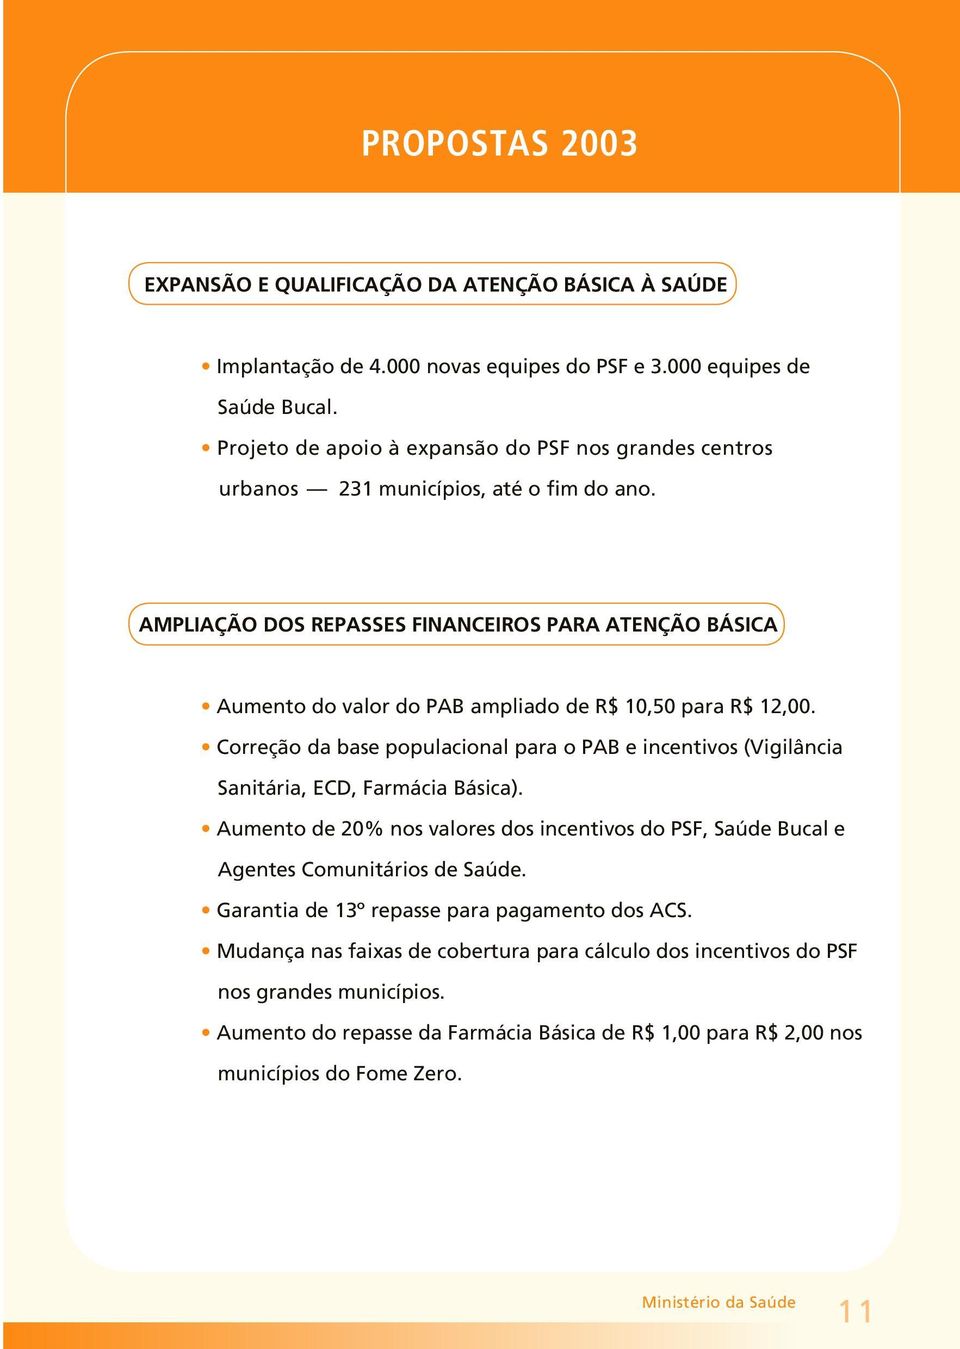 AMPLIAÇÃO DOS REPASSES FINANCEIROS PARA ATENÇÃO BÁSICA Aumento do valor do PAB ampliado de R$ 10,50 para R$ 12,00.